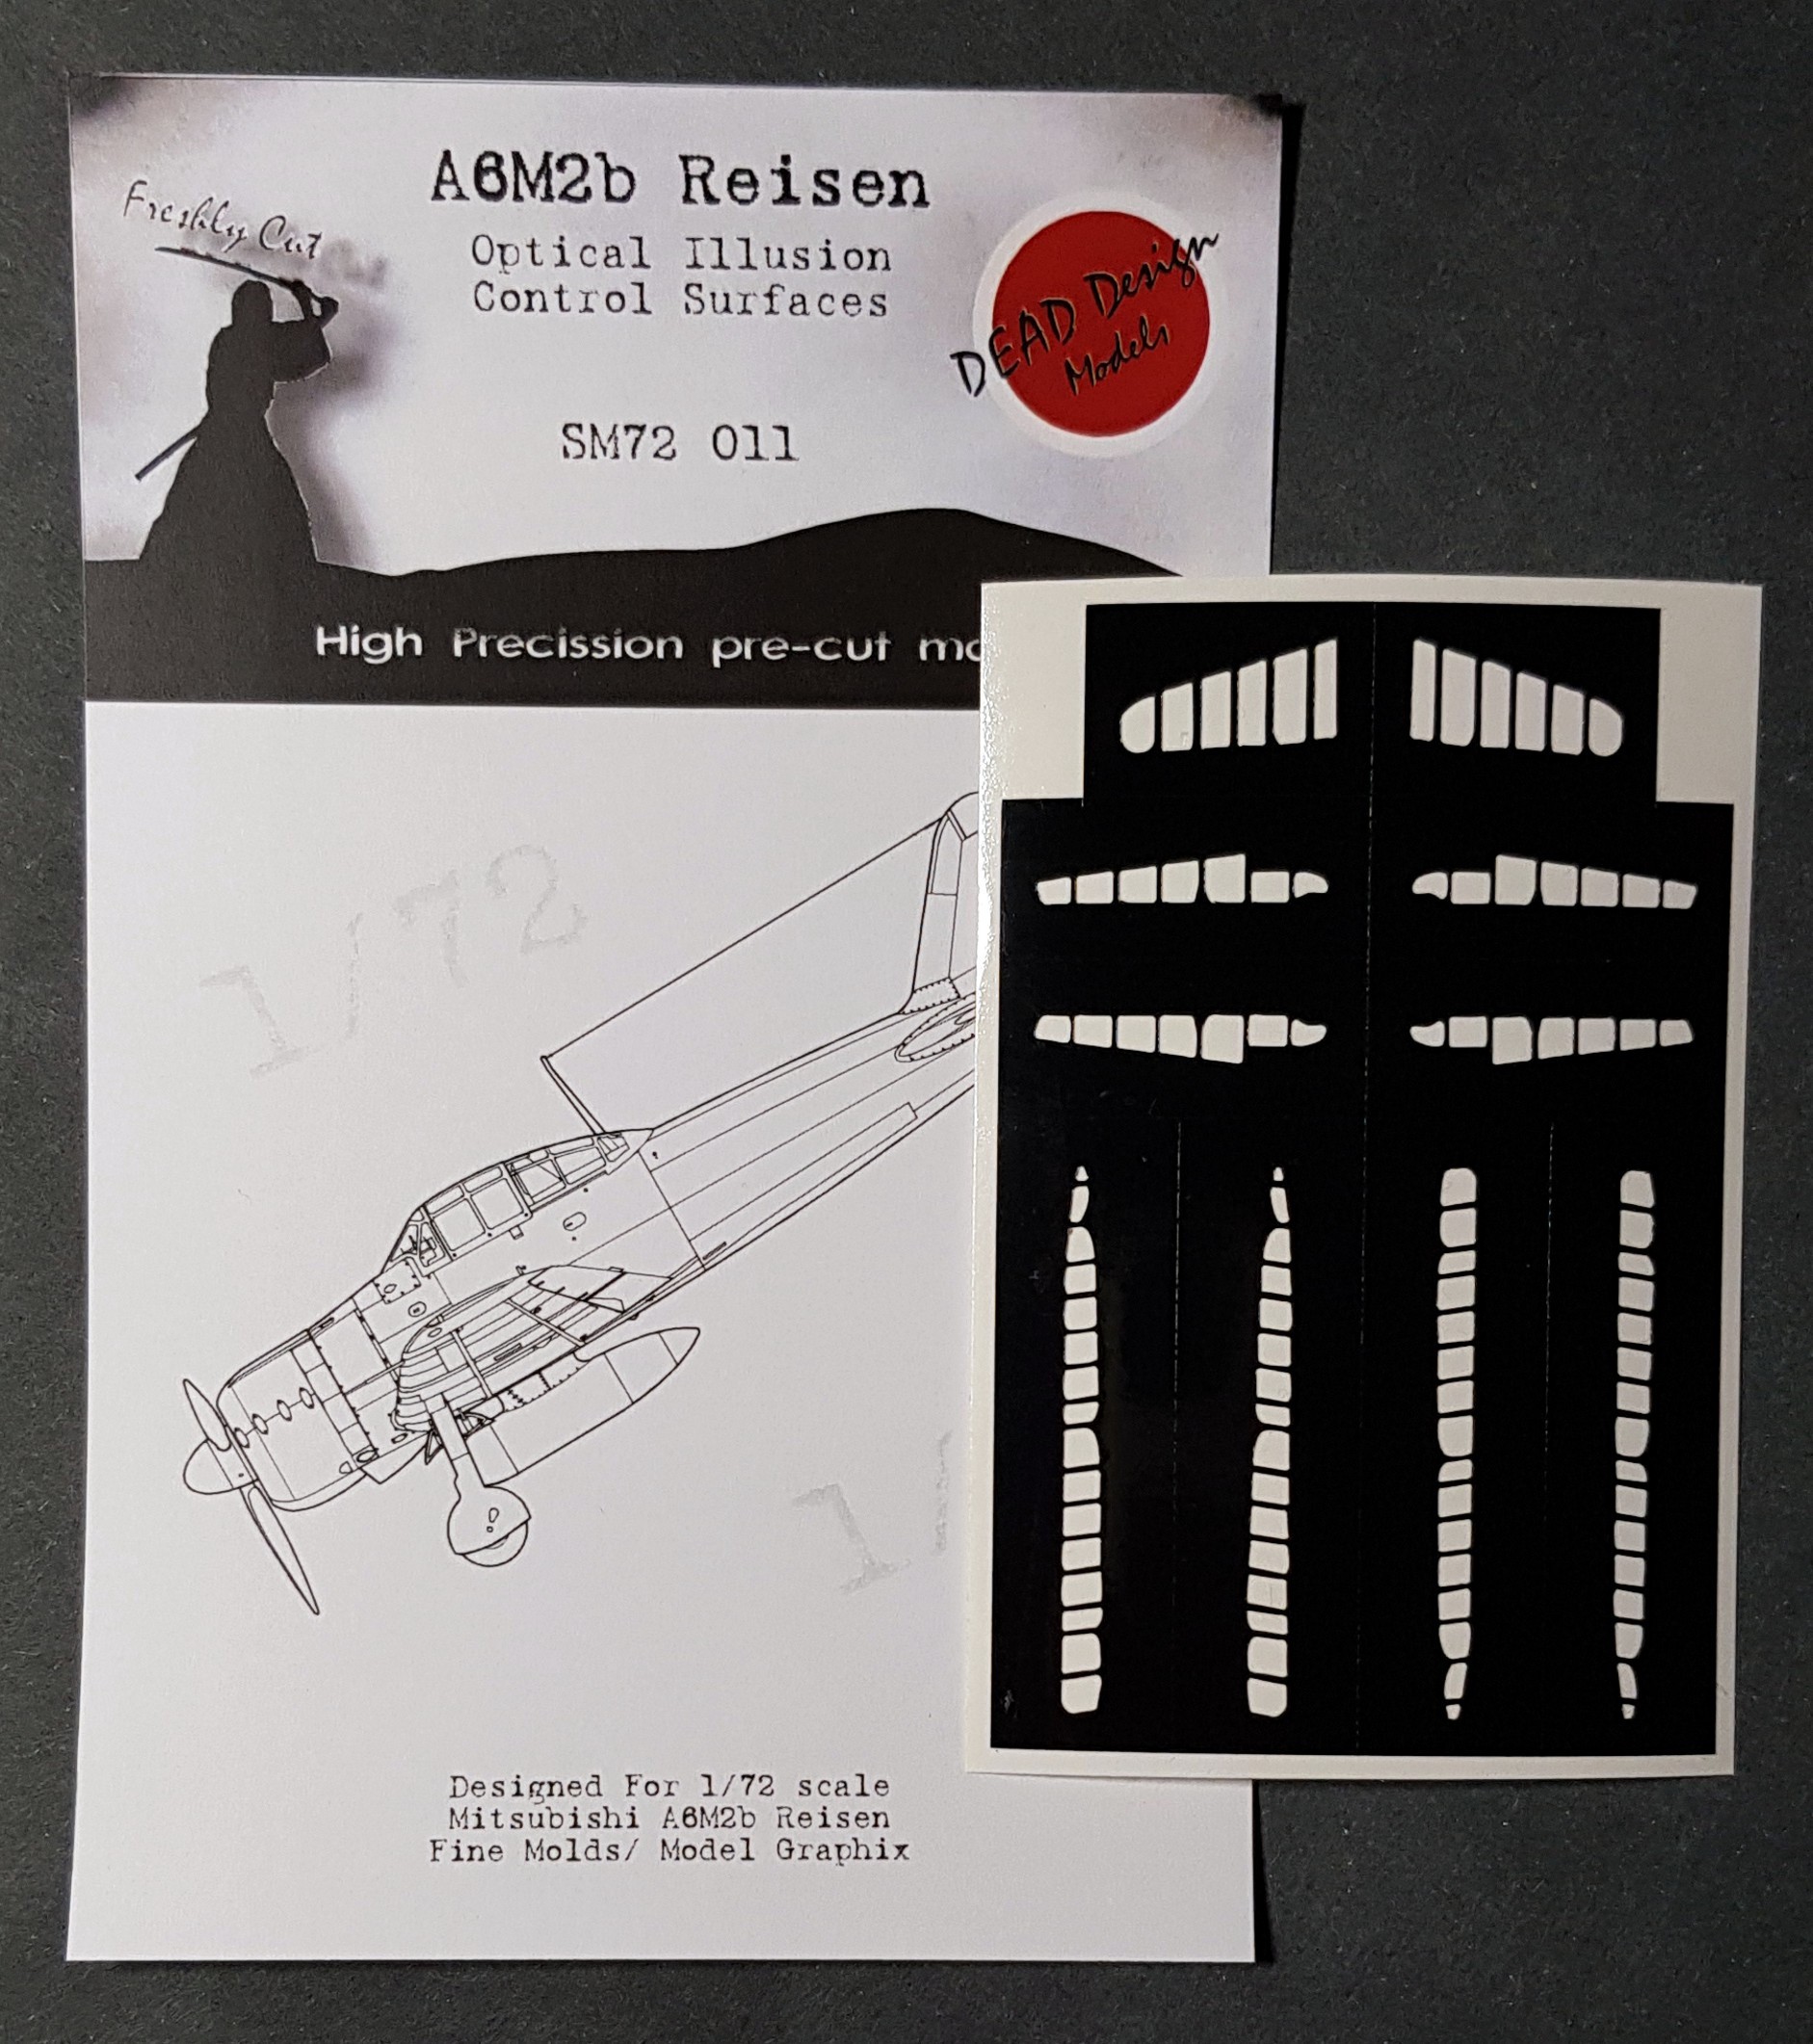  Dead Design Models Surfaces de contrôle Mitsubishi A6M2b m.21 Reisen 